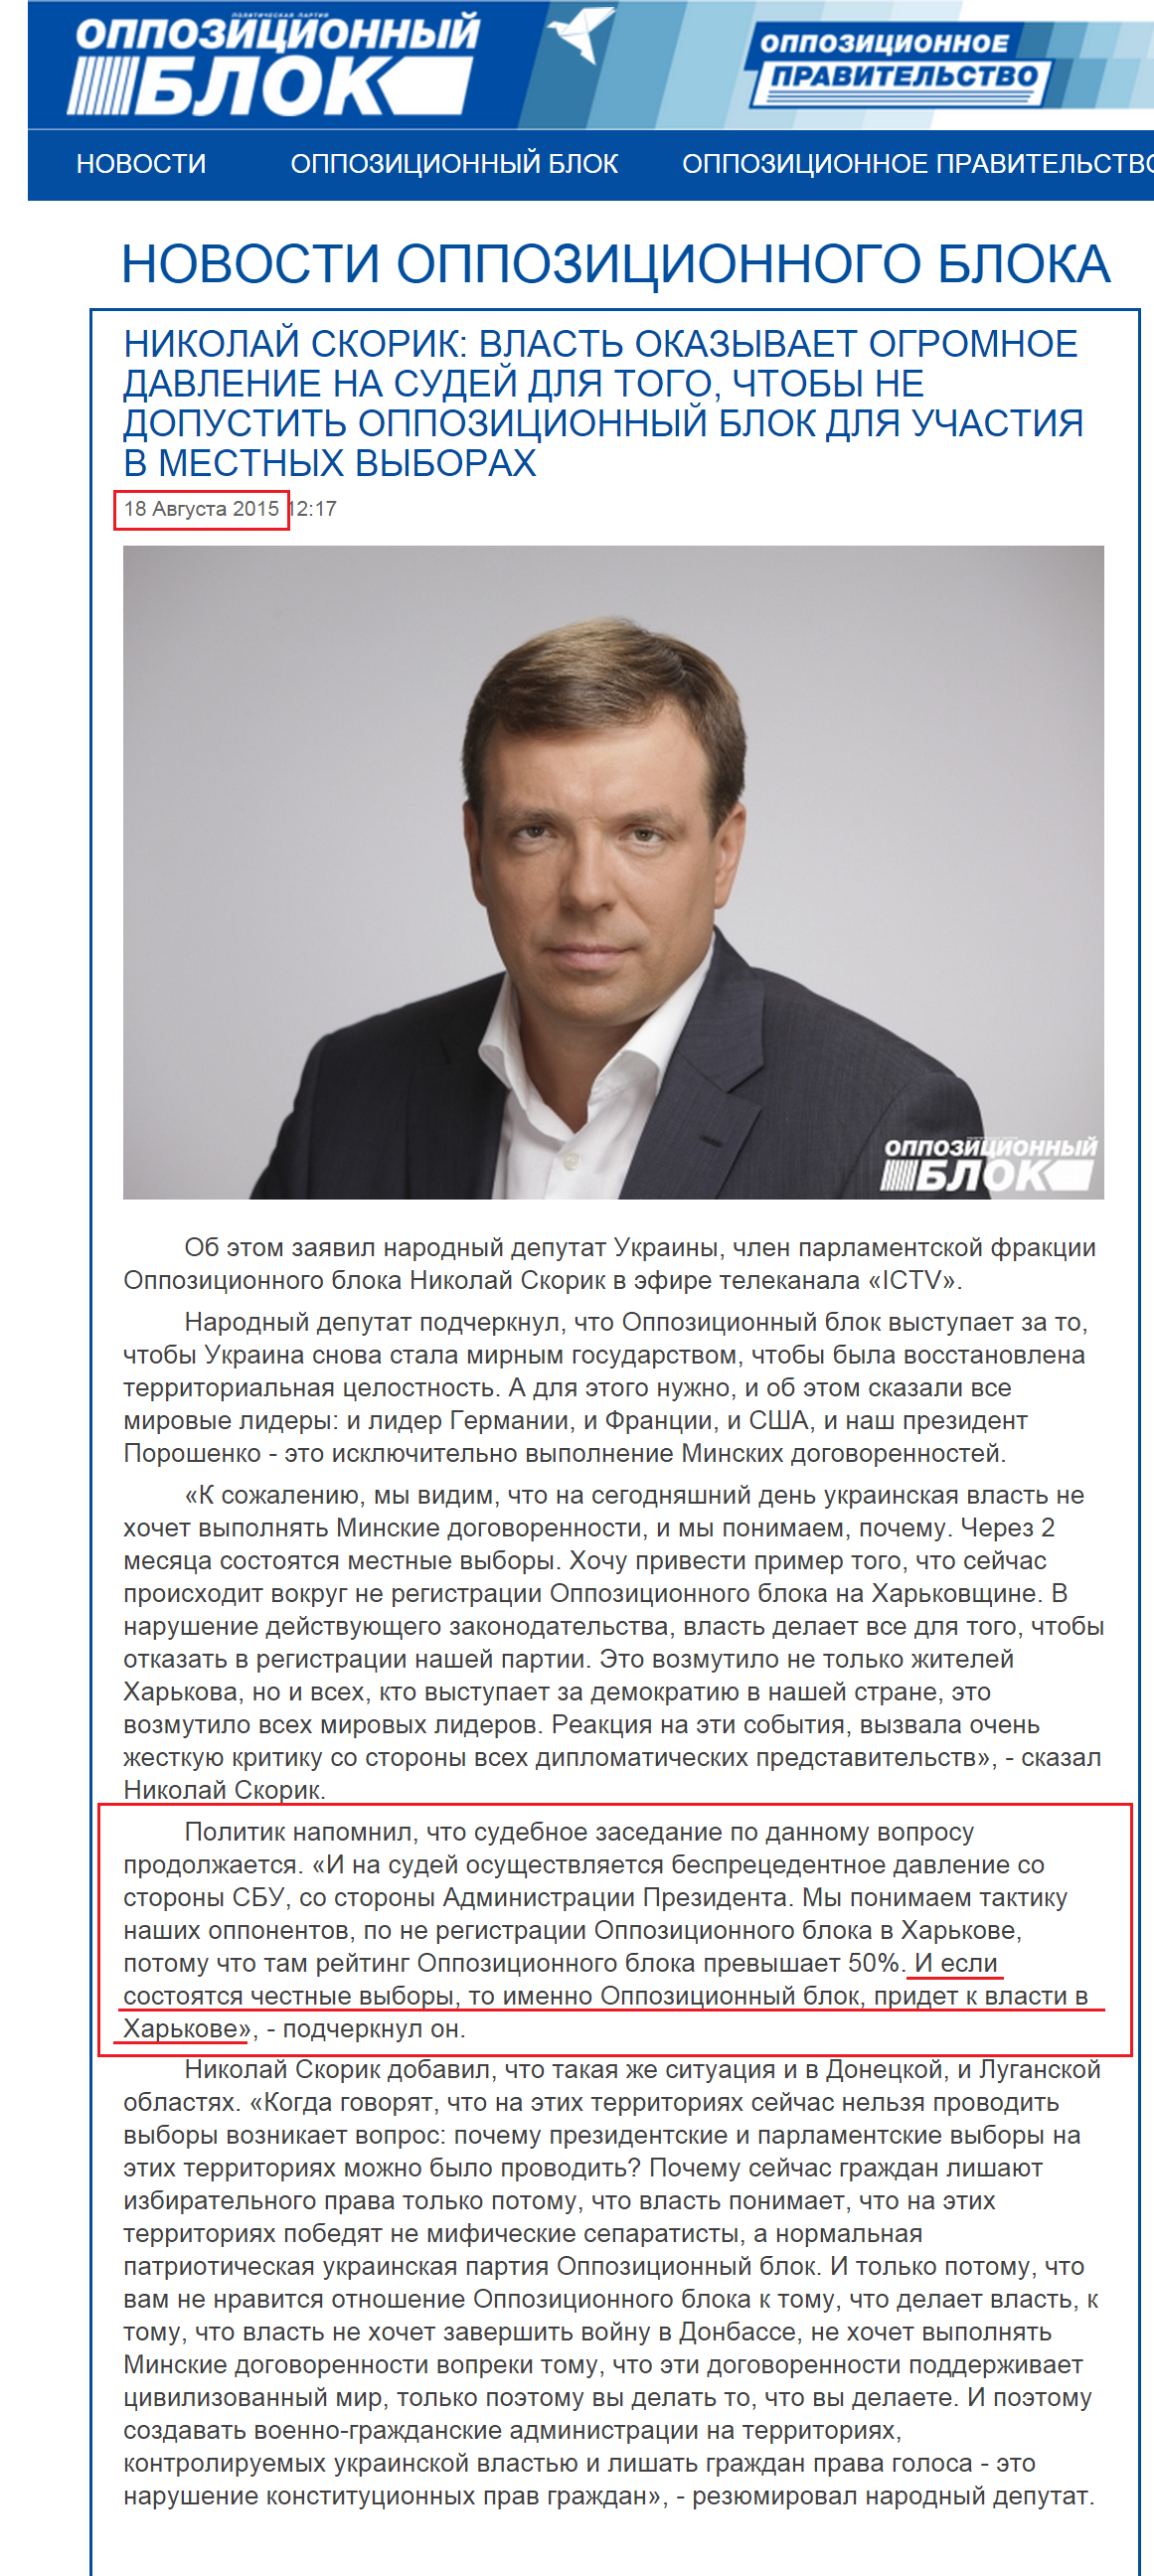 http://opposition.org.ua/news/mikola-skorik-vlada-chinit-shalenij-tisk-na-suddiv-dlya-togo-shhob-ne-dopustiti-opozicijnij-blok-dlya-uchasti-u-miscevikh-viborakh.html